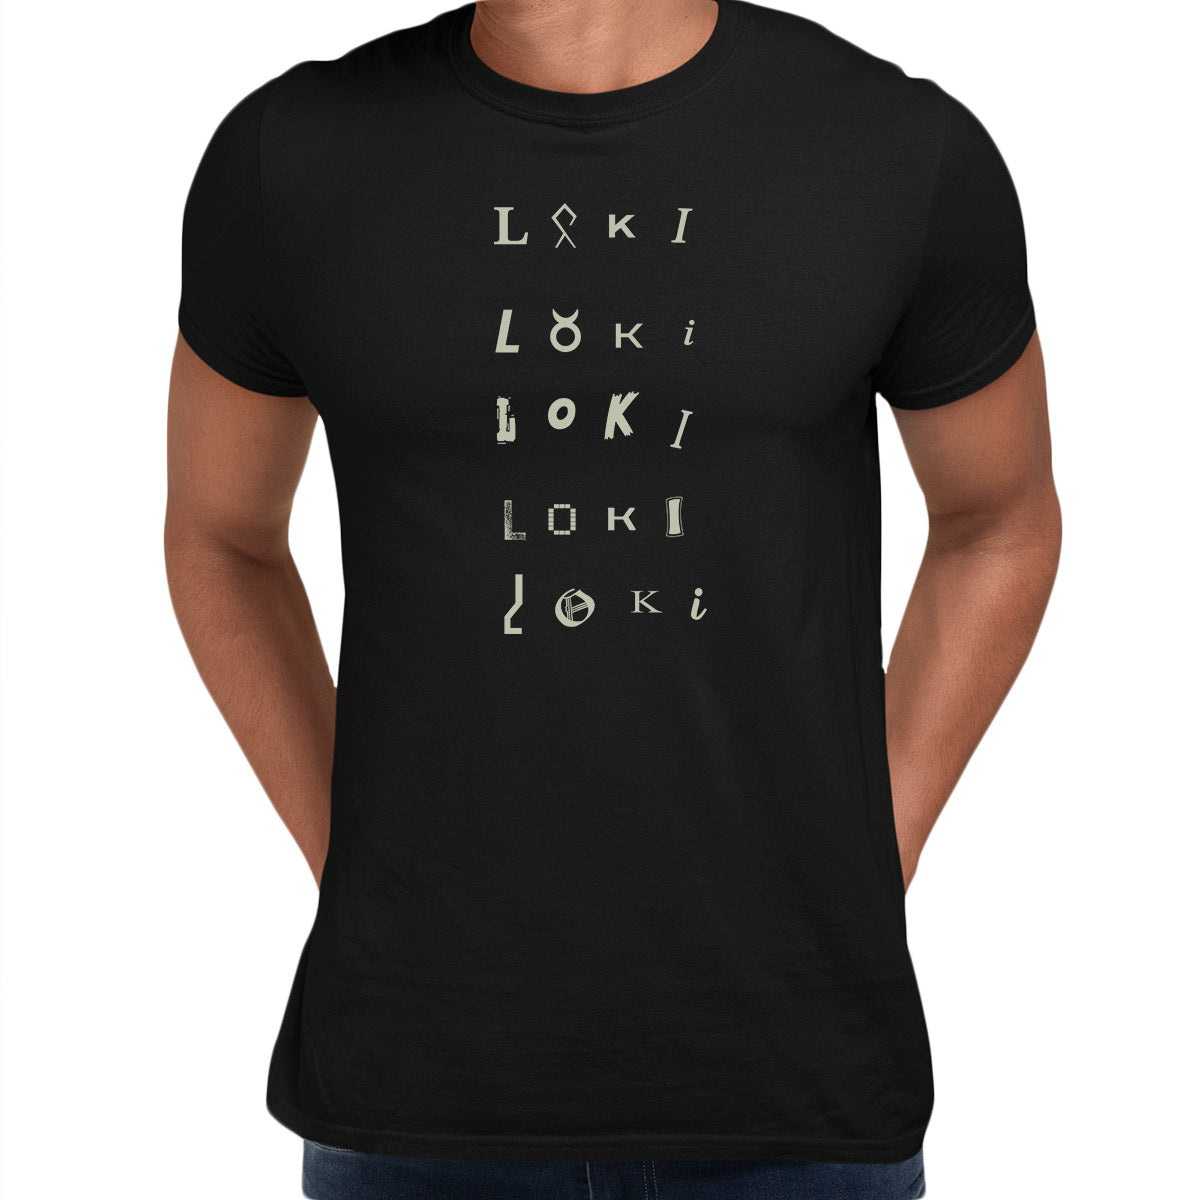 Loki TVA 2 Emblem Black T-shirt 